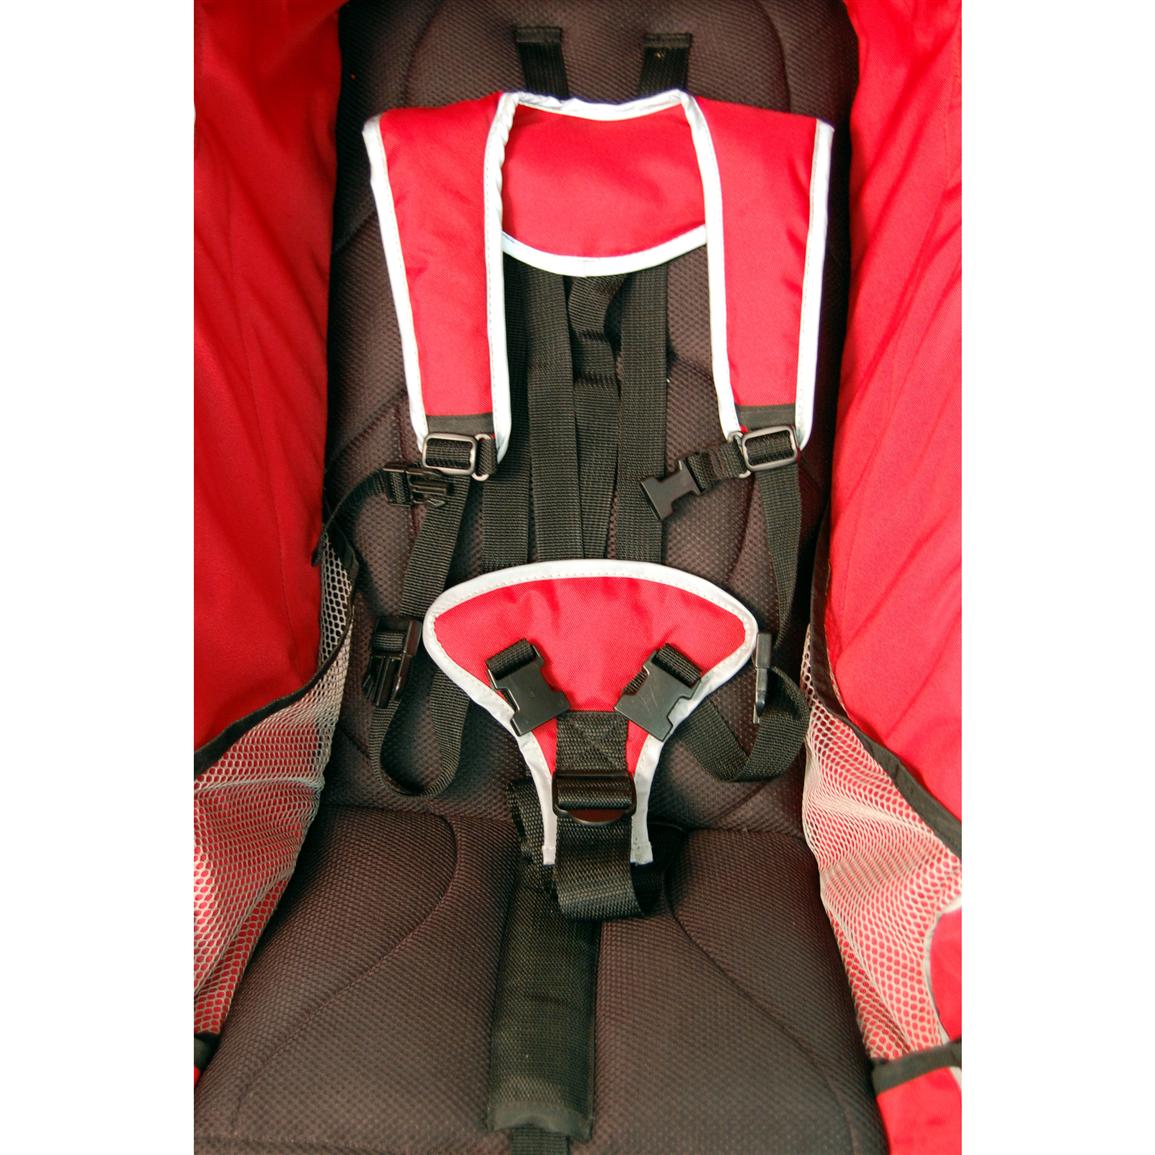 dreamer design special needs stroller